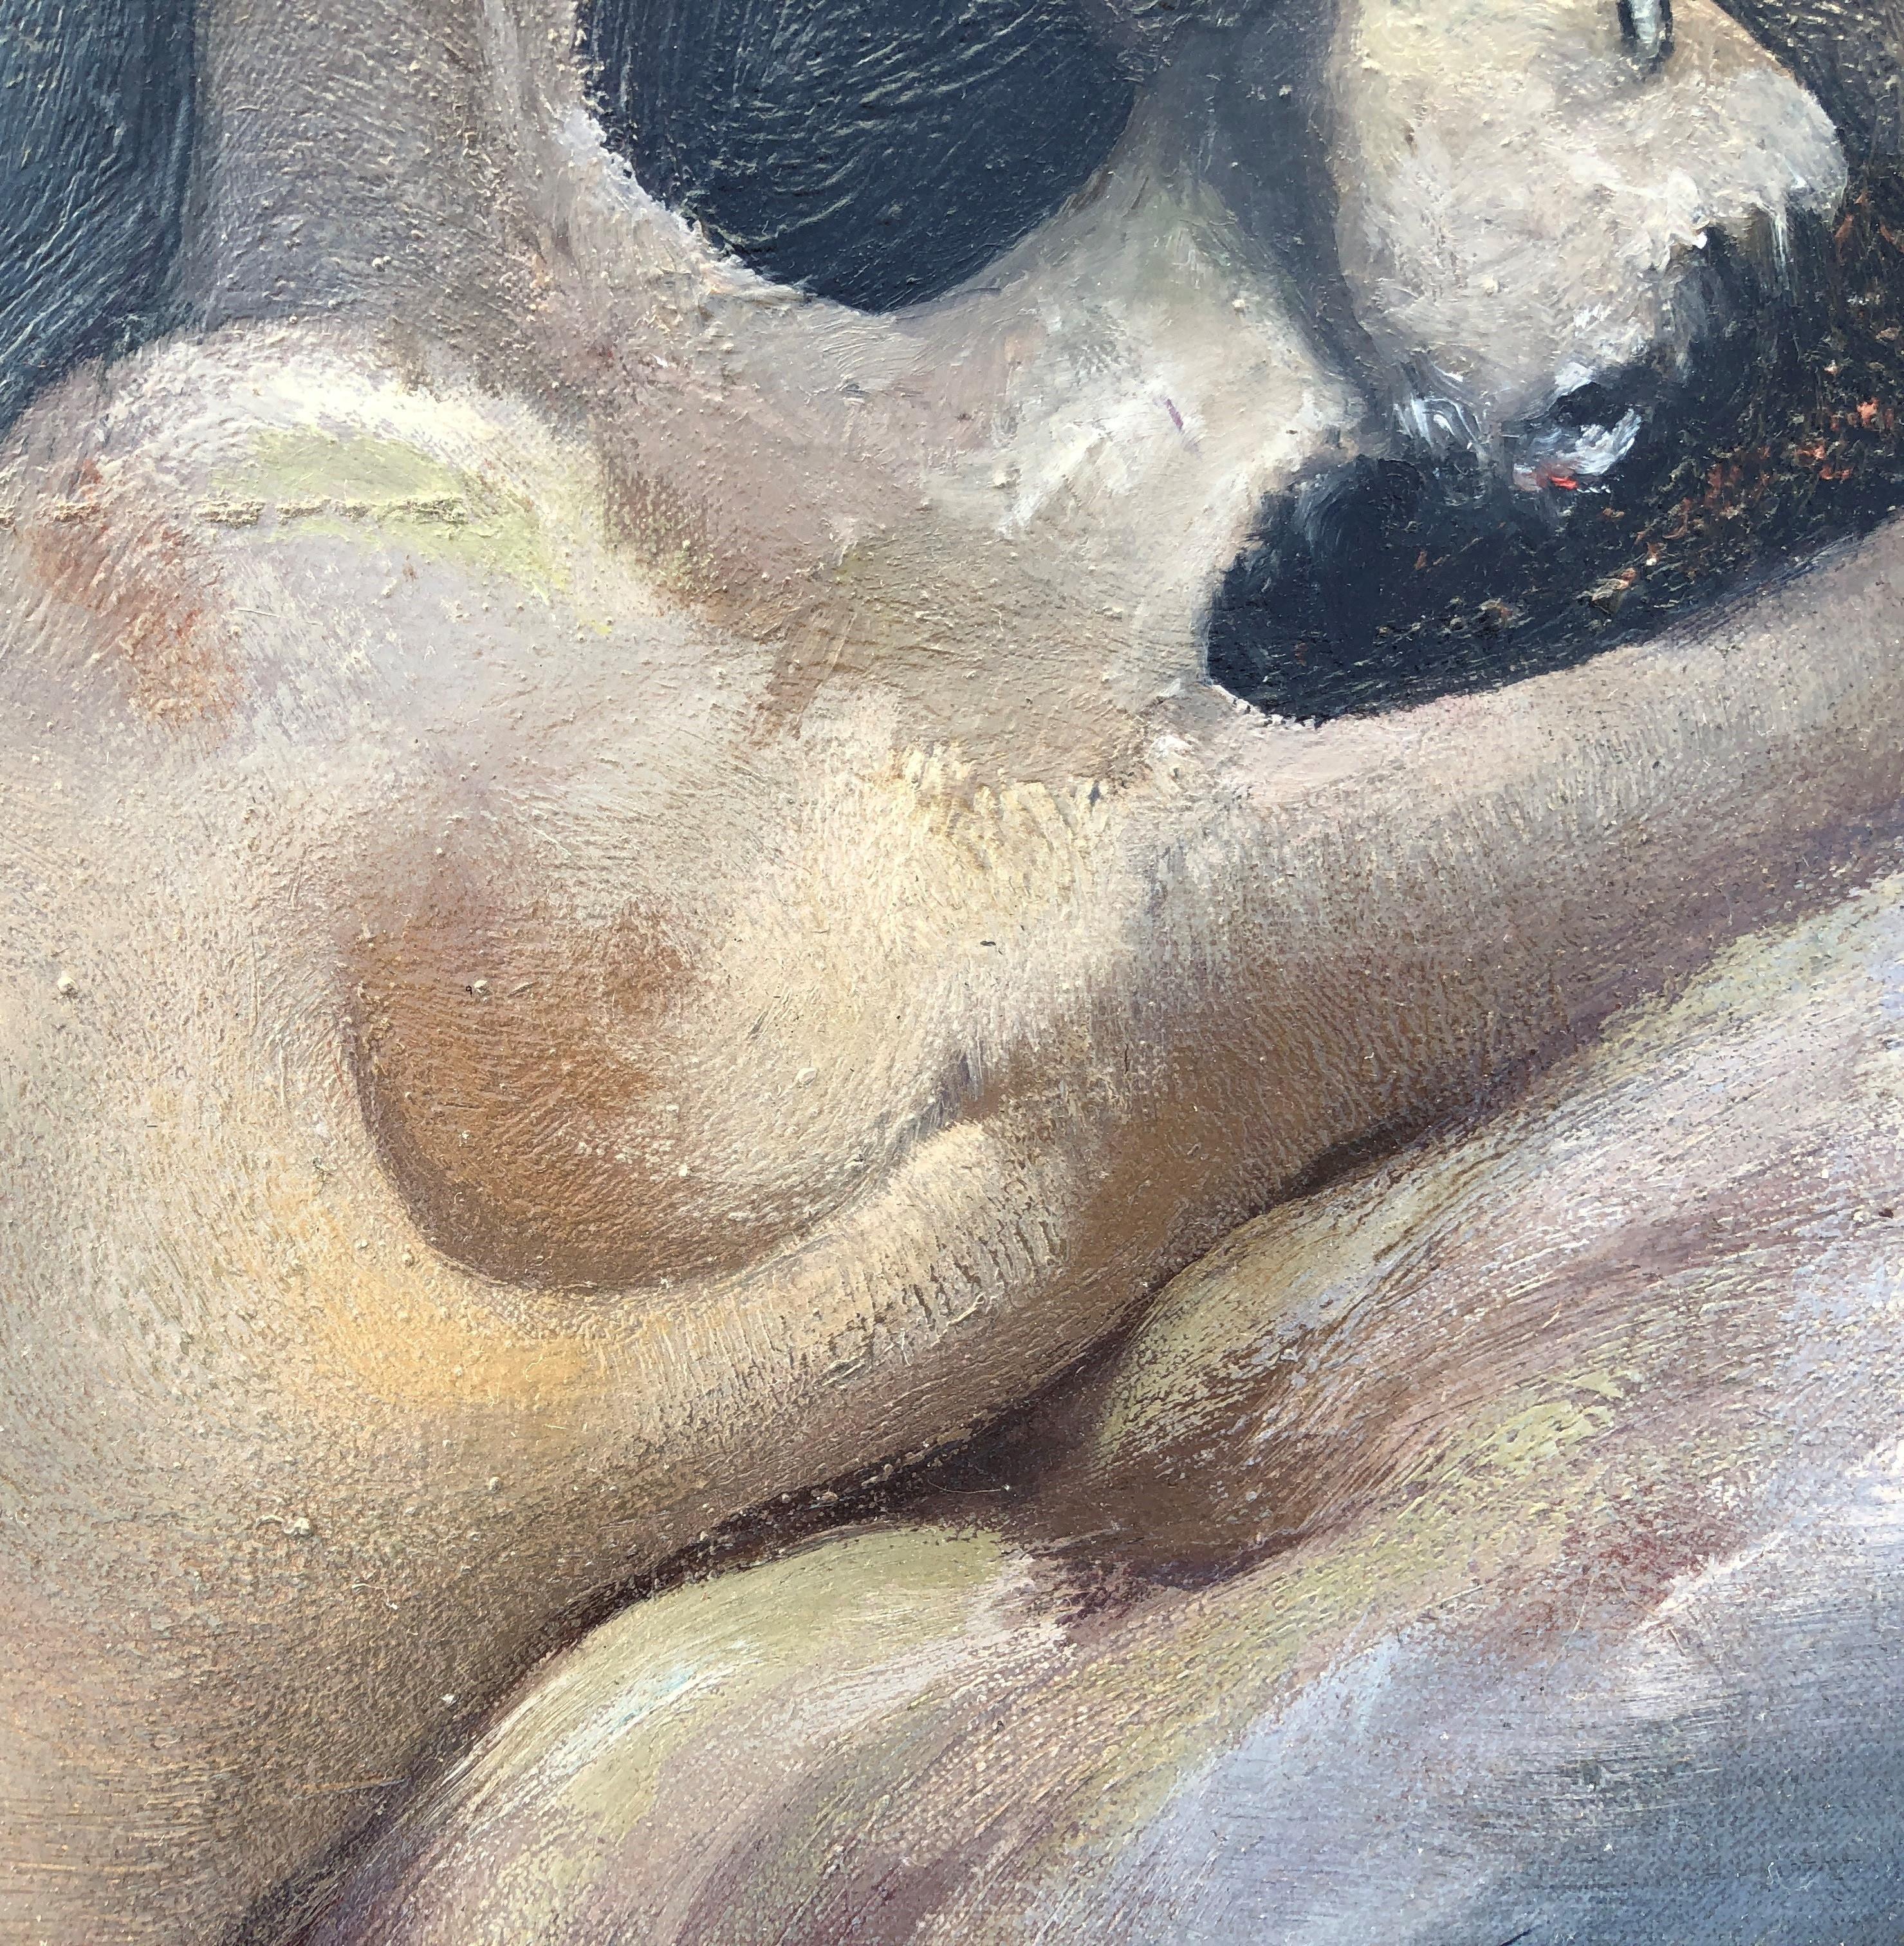 Die nackte Frau von Lloveras – Original-Gemälde in Öl auf Leinwand (Grau), Nude Painting, von Frederic Lloveras Herrera